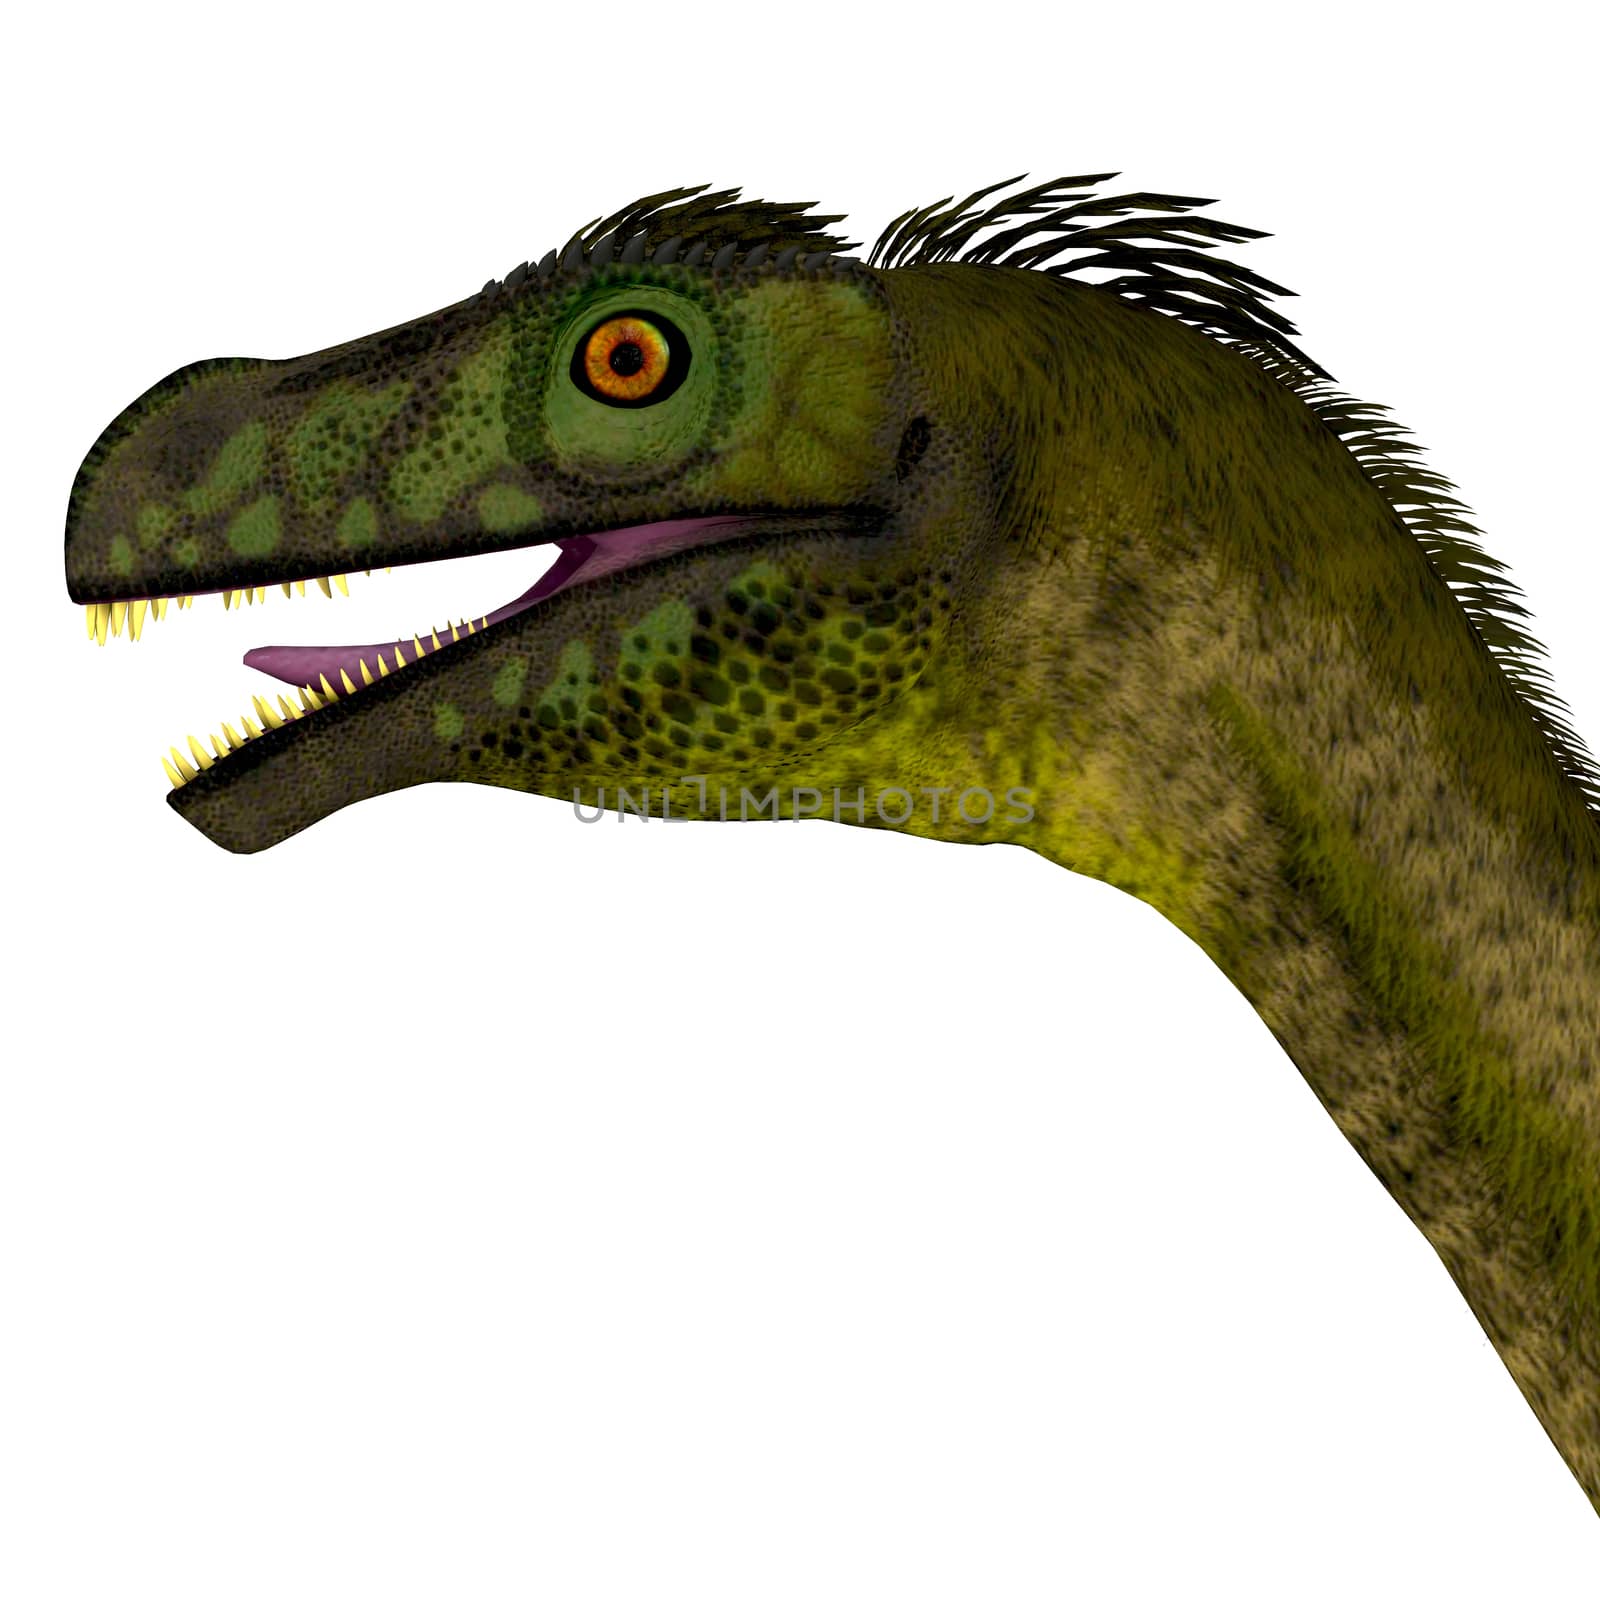 Ornitholestes Dinosaur Head by Catmando